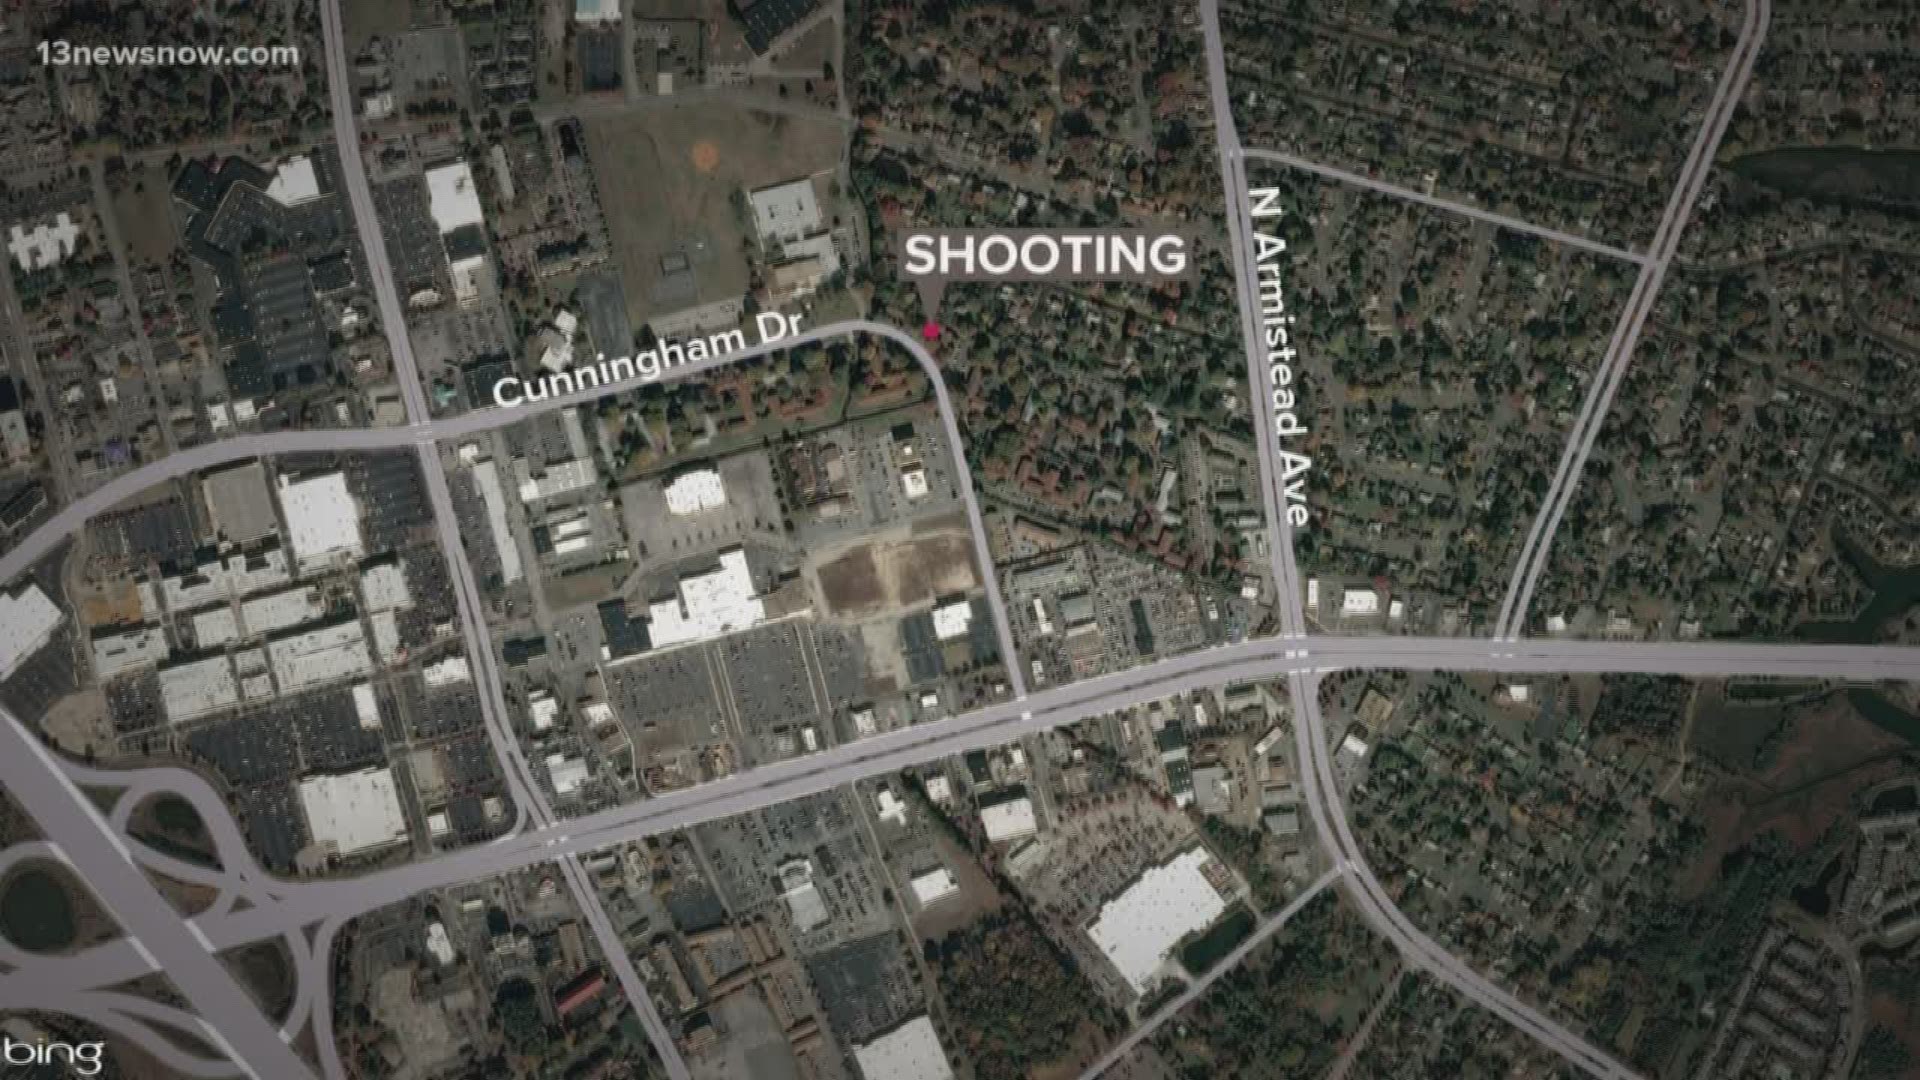 Police investigate weekend shootings in Hampton